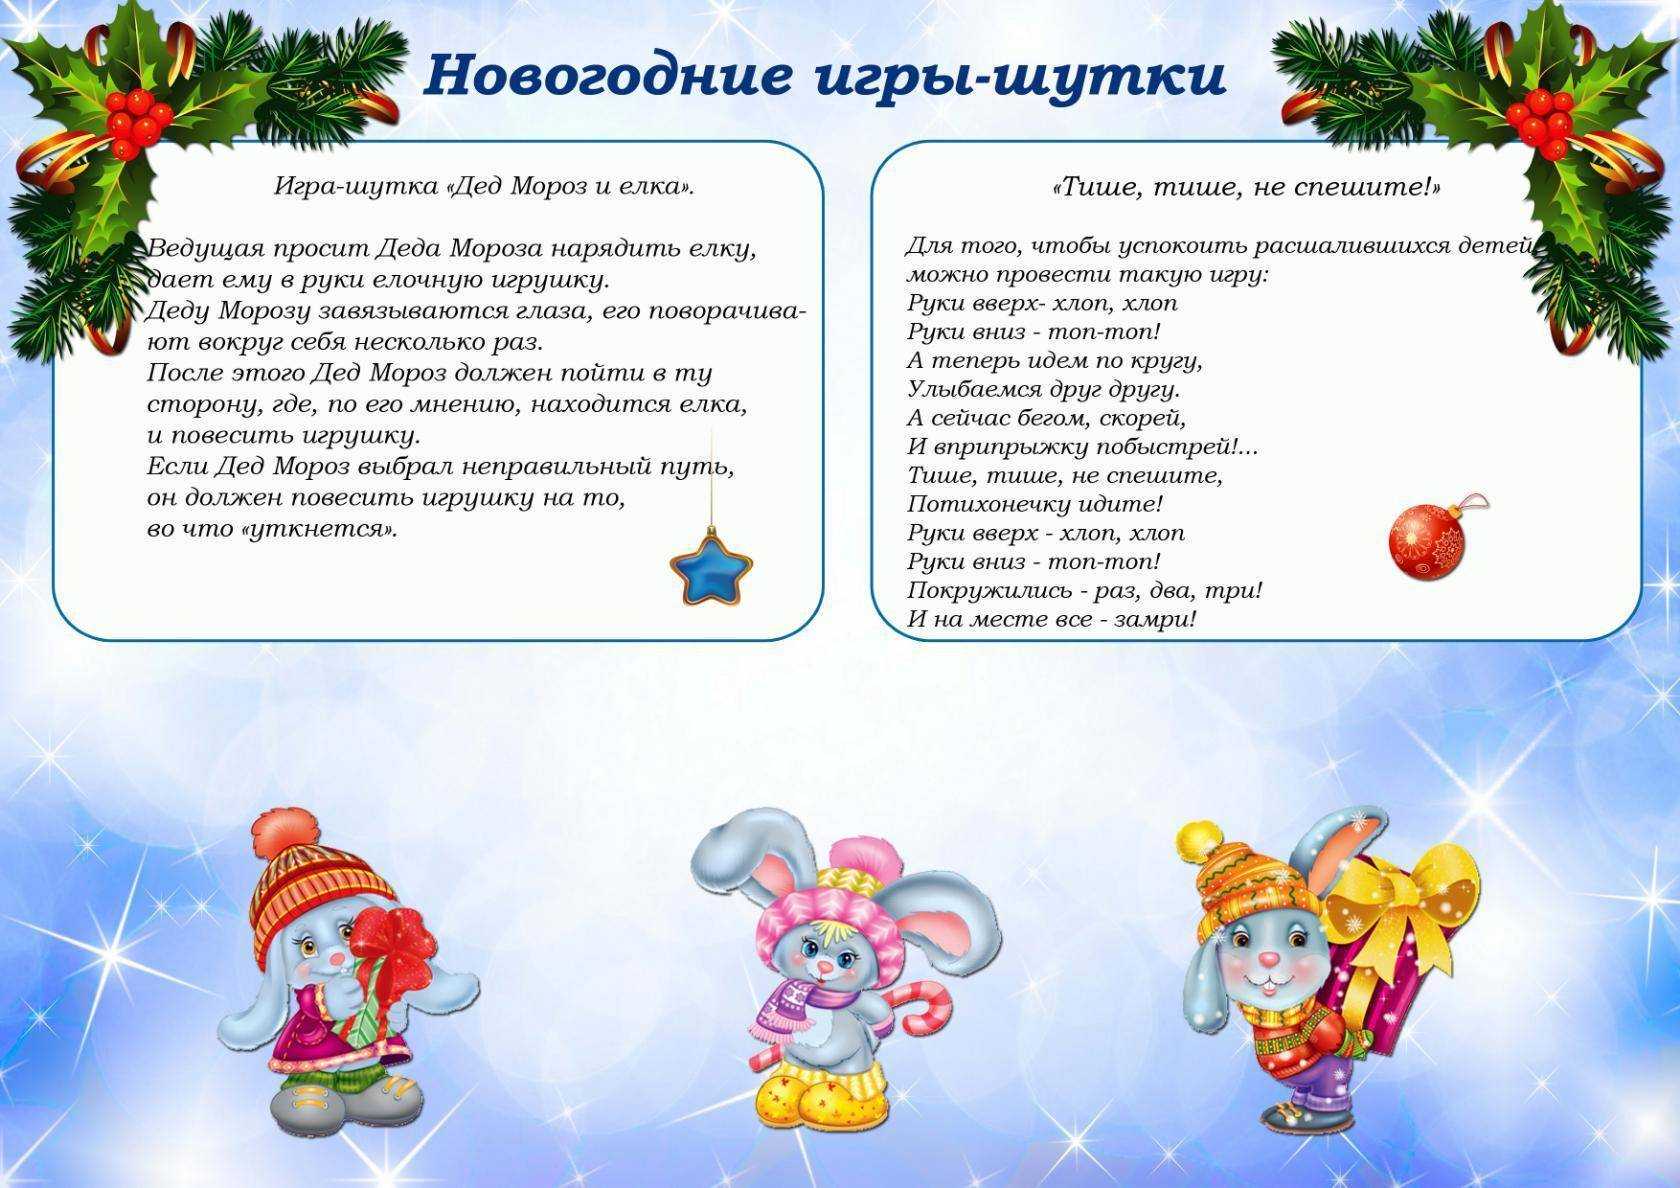 Веселые игры для новогодних утренников детям Игры с Дедом Морозом и Снегурочкой